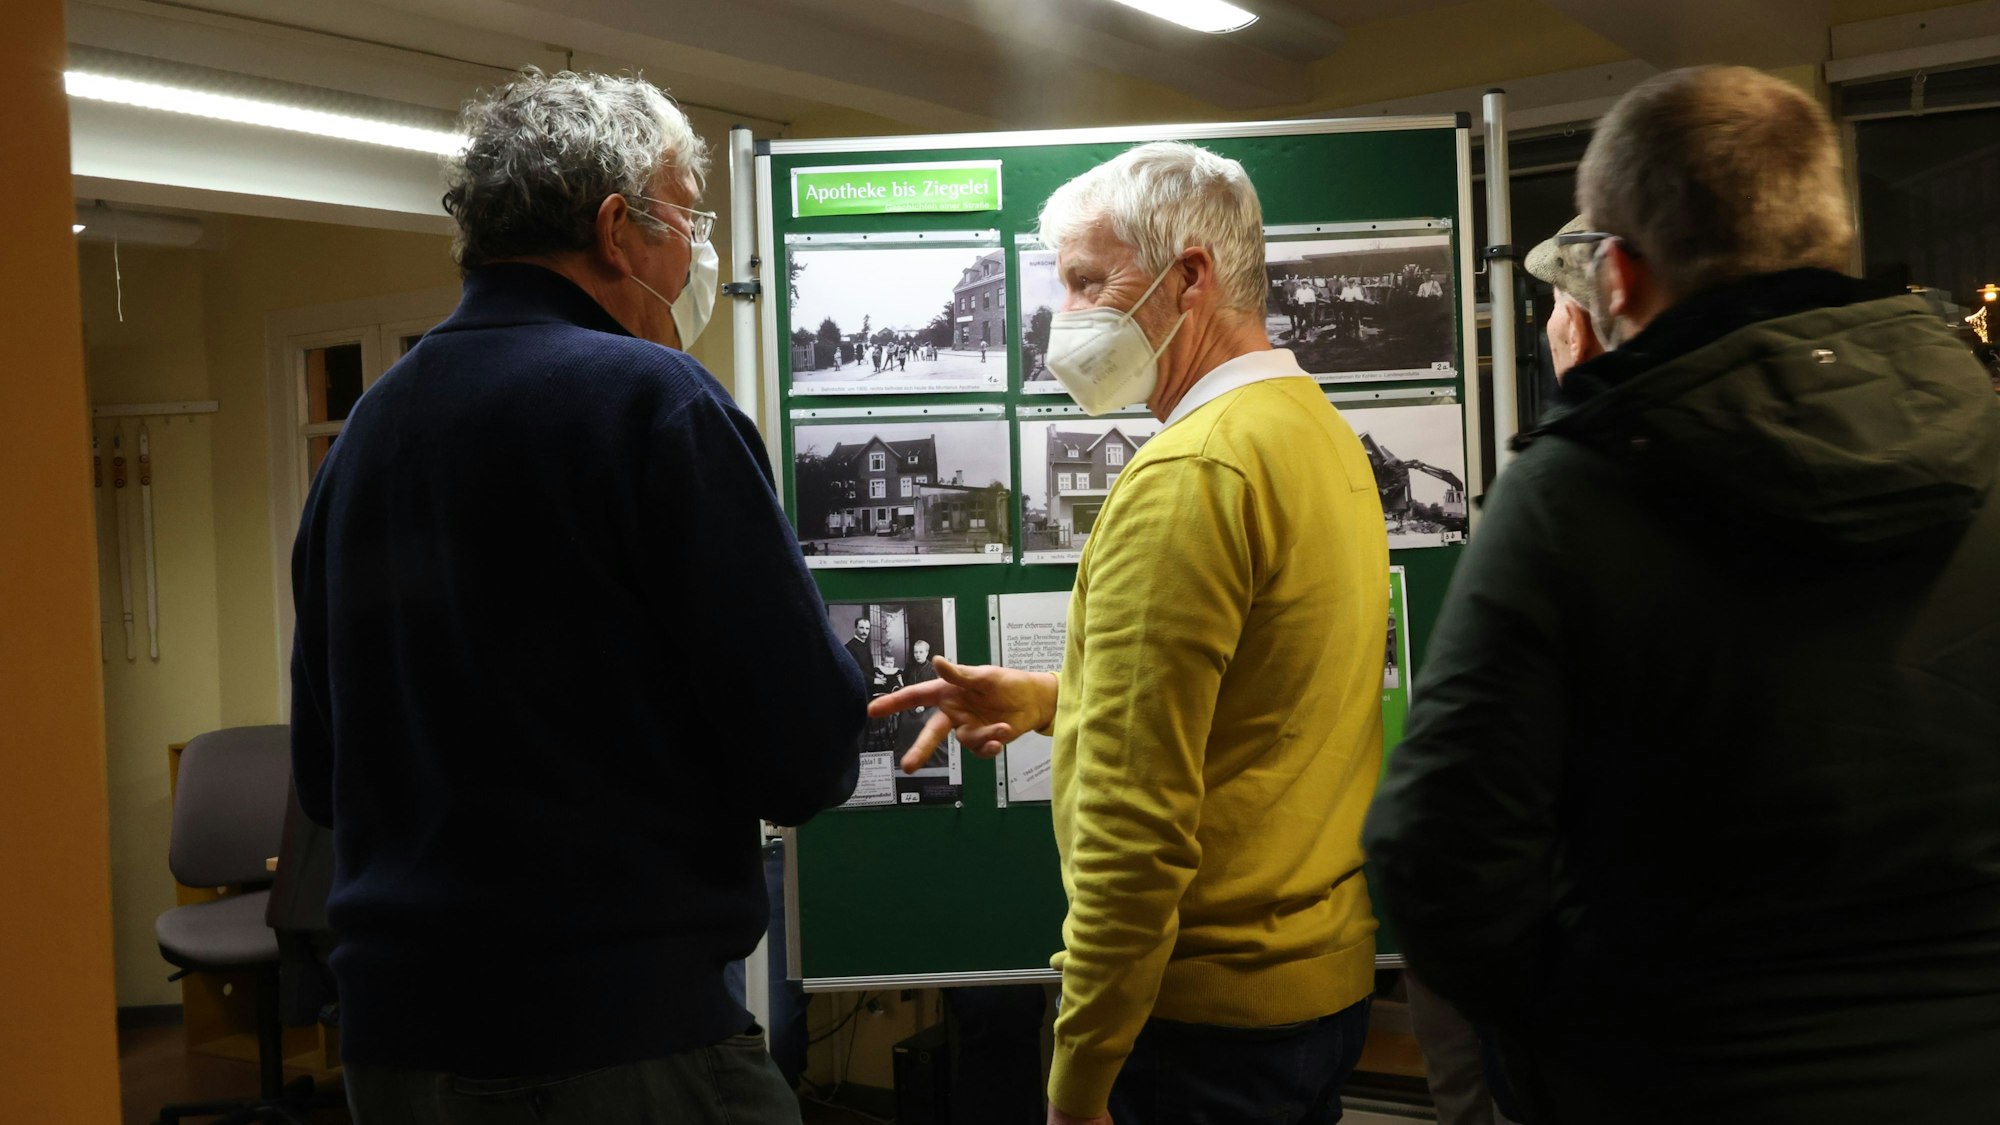 Vor einer Tafel mit historischen Fotos unterhalten sich zwei ältere Männer.